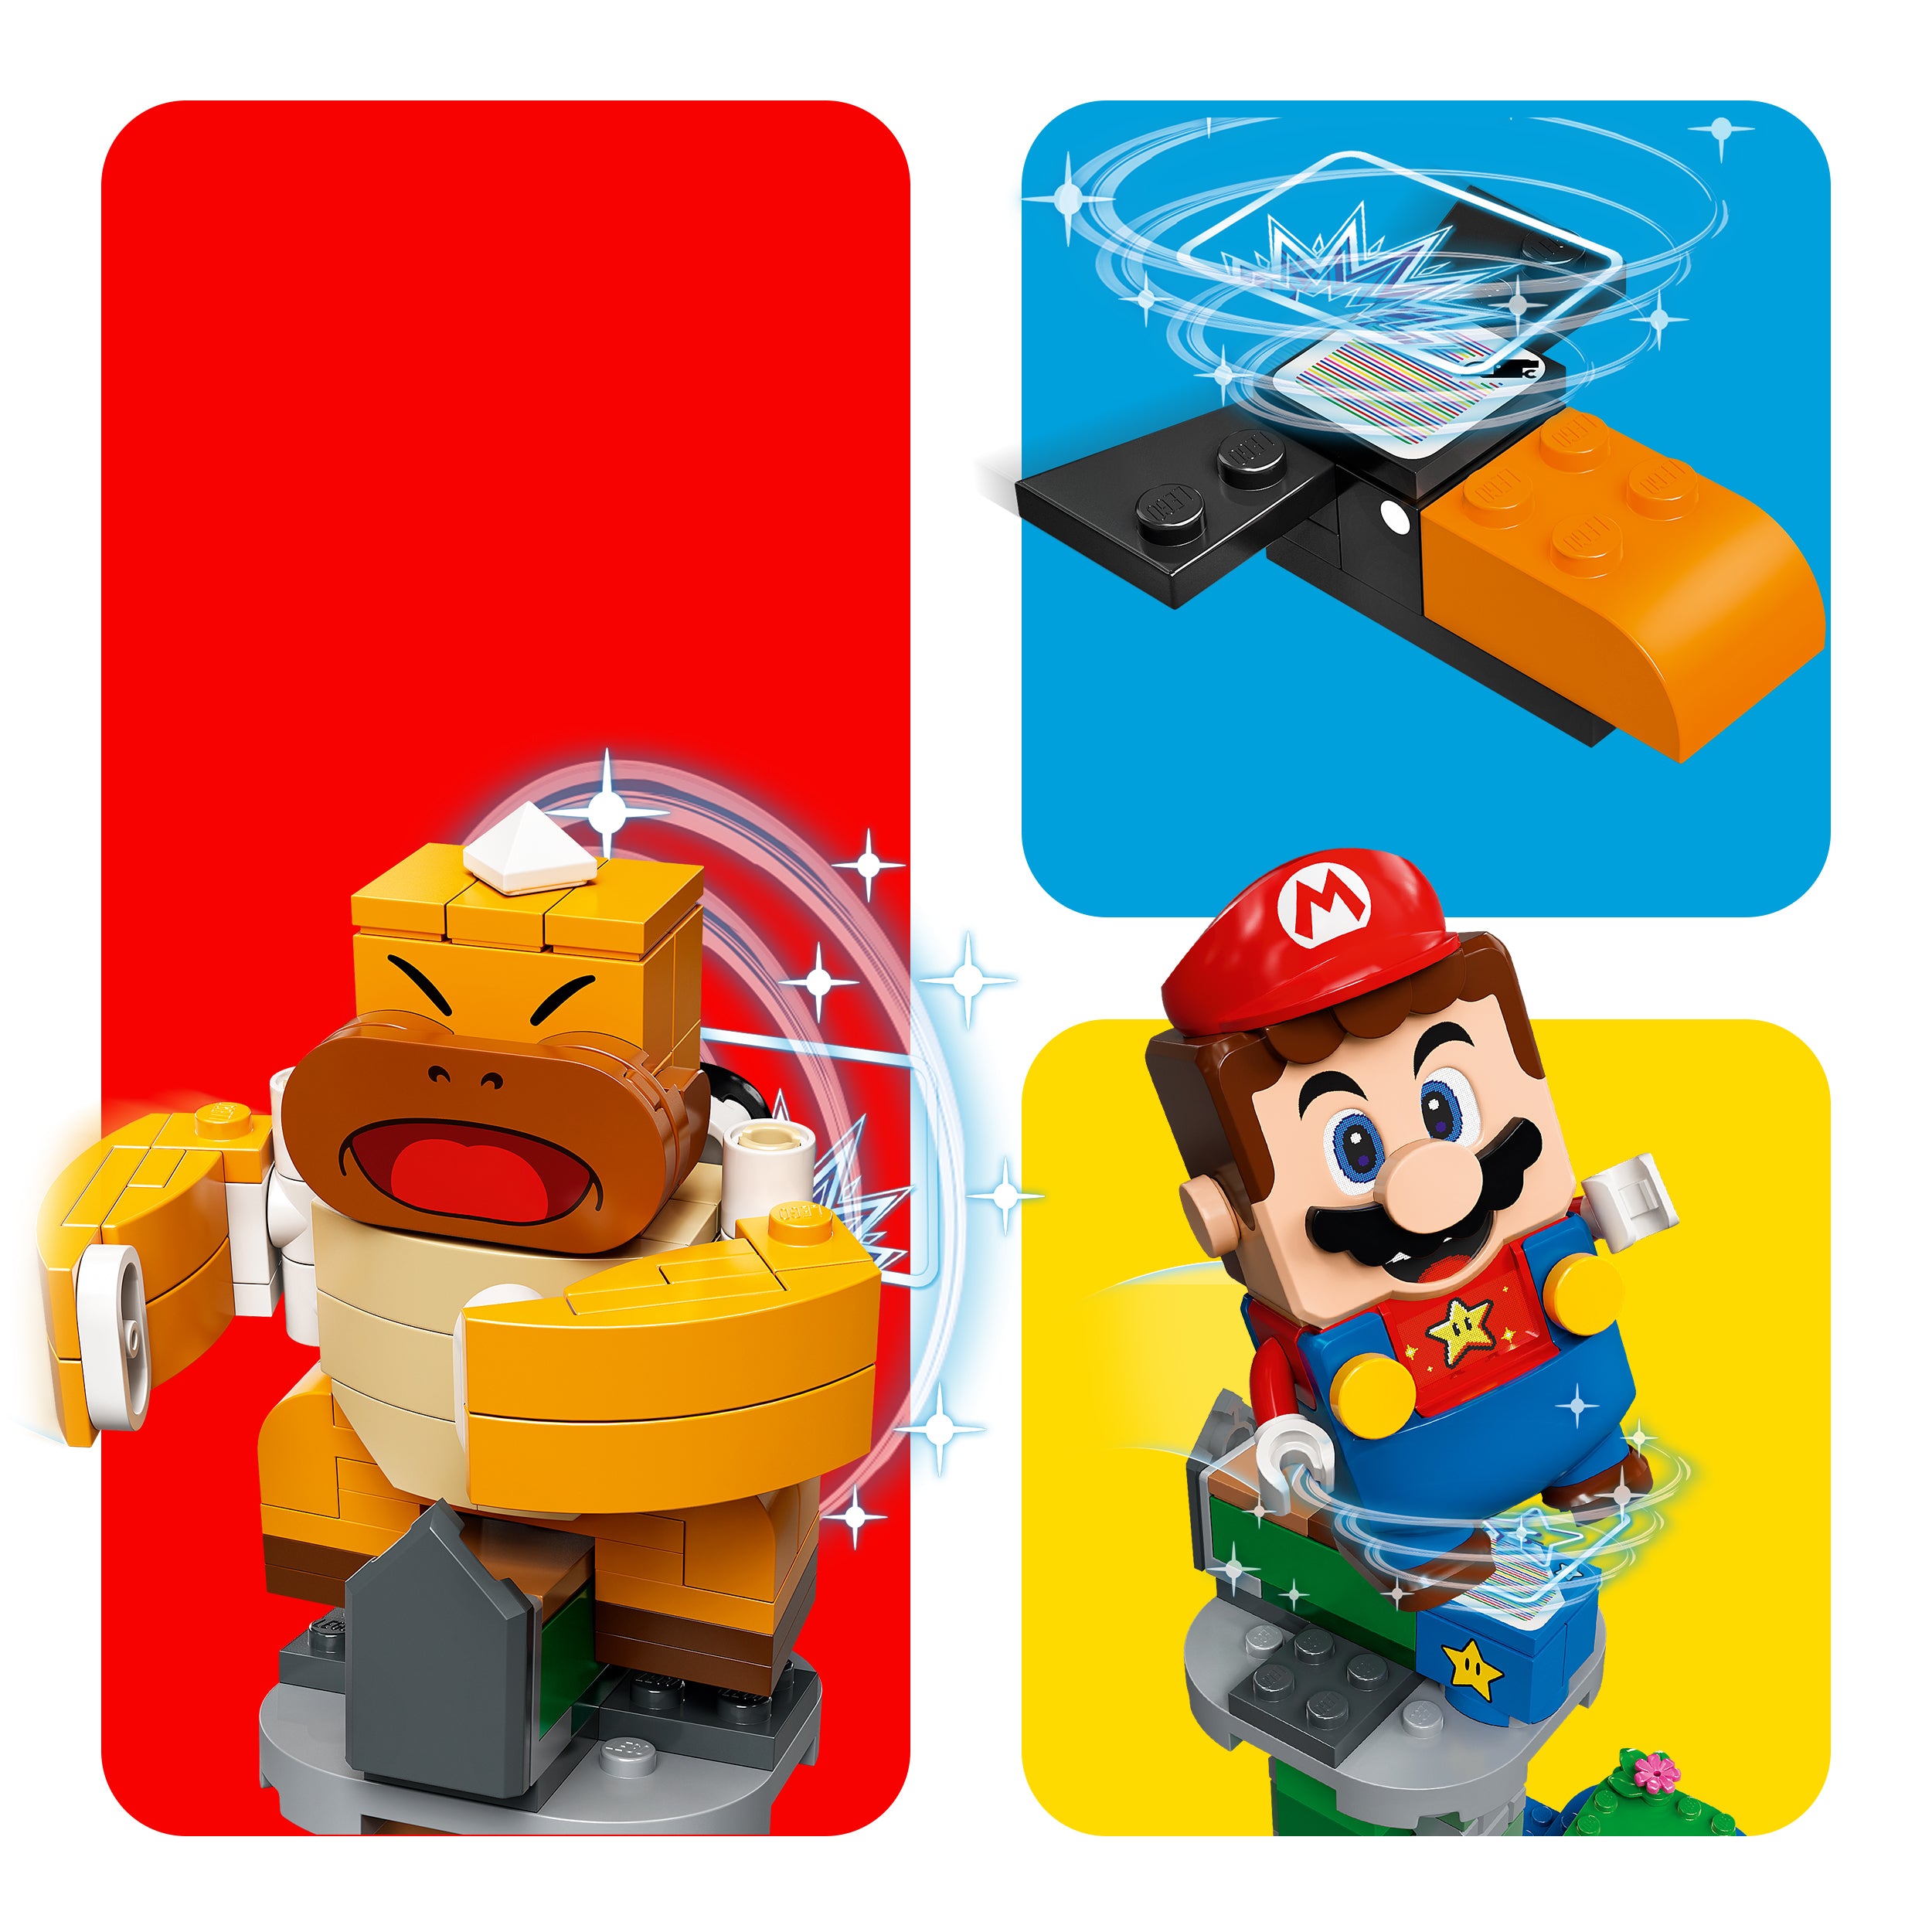 71388 LEGO® Super Mario - TORRE DEL BOSS SUMO BROS - EXPANSION PACK